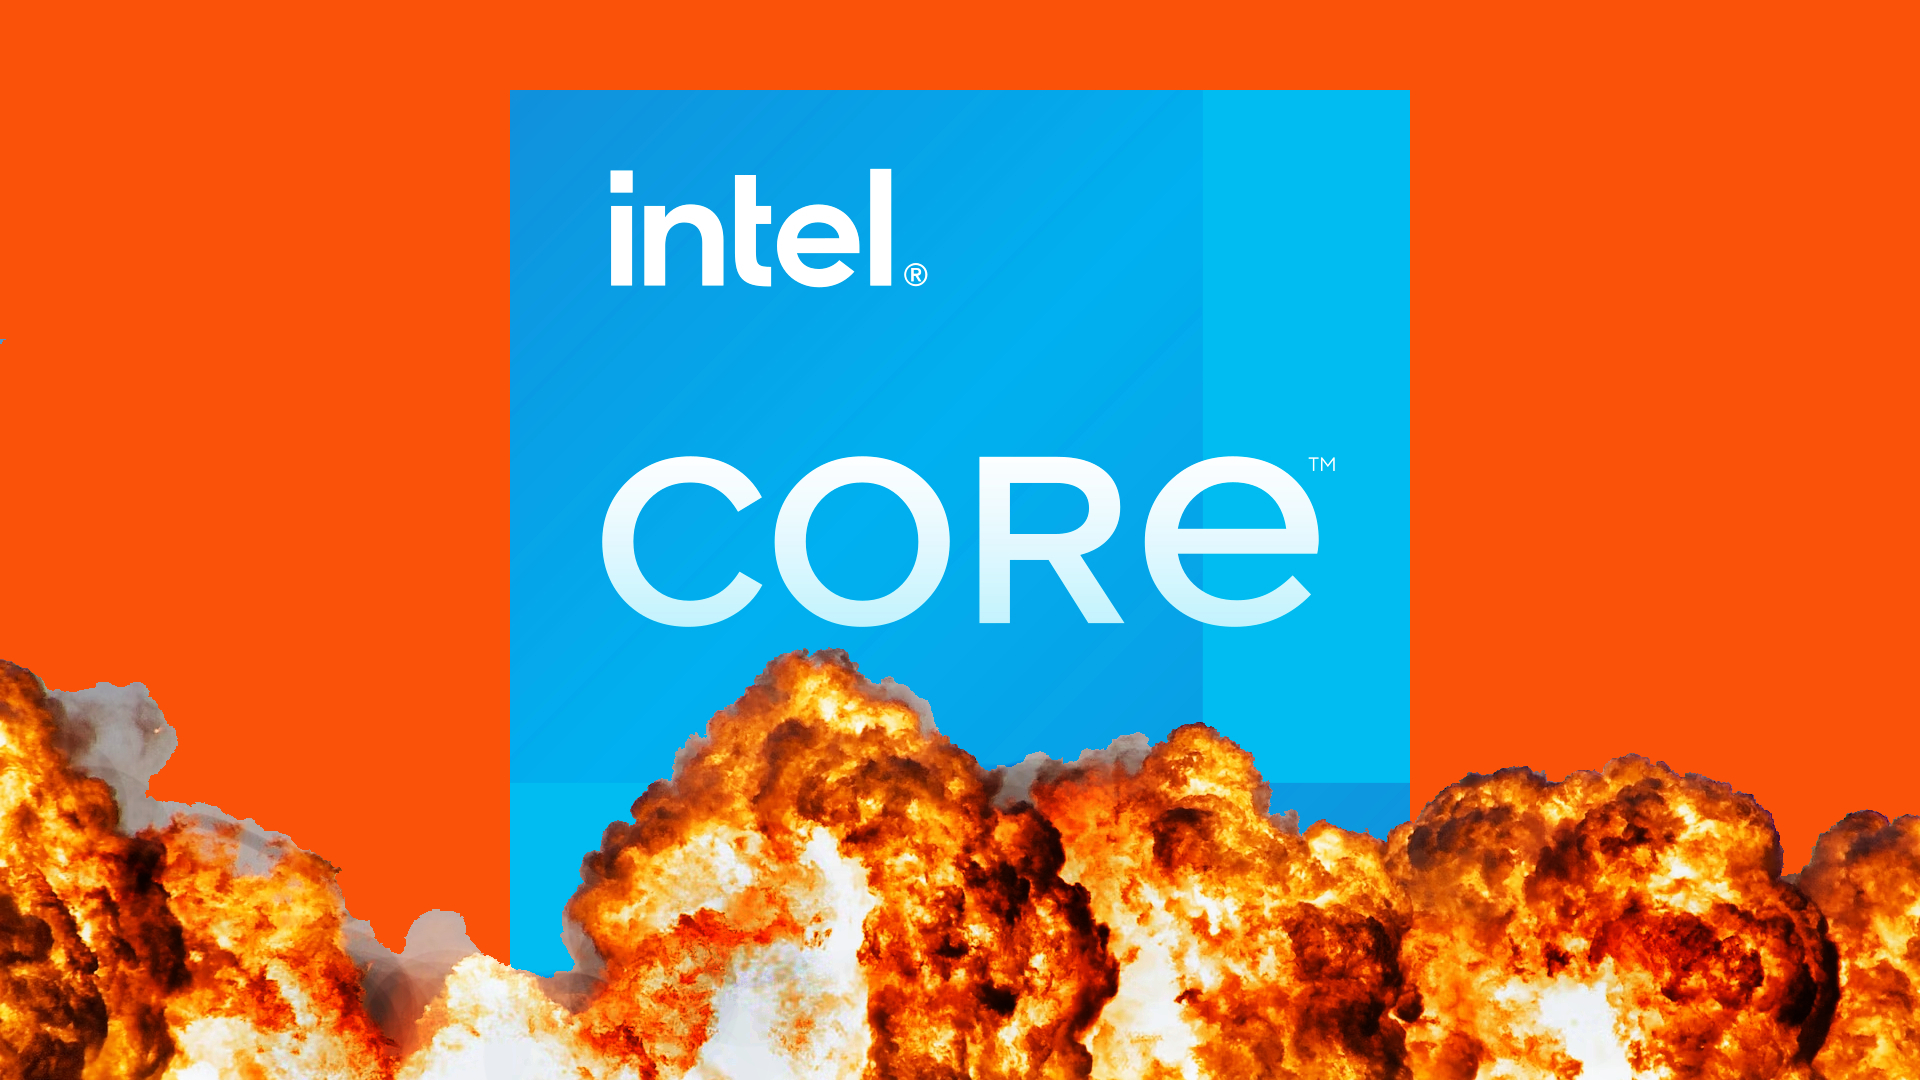 intel core inside